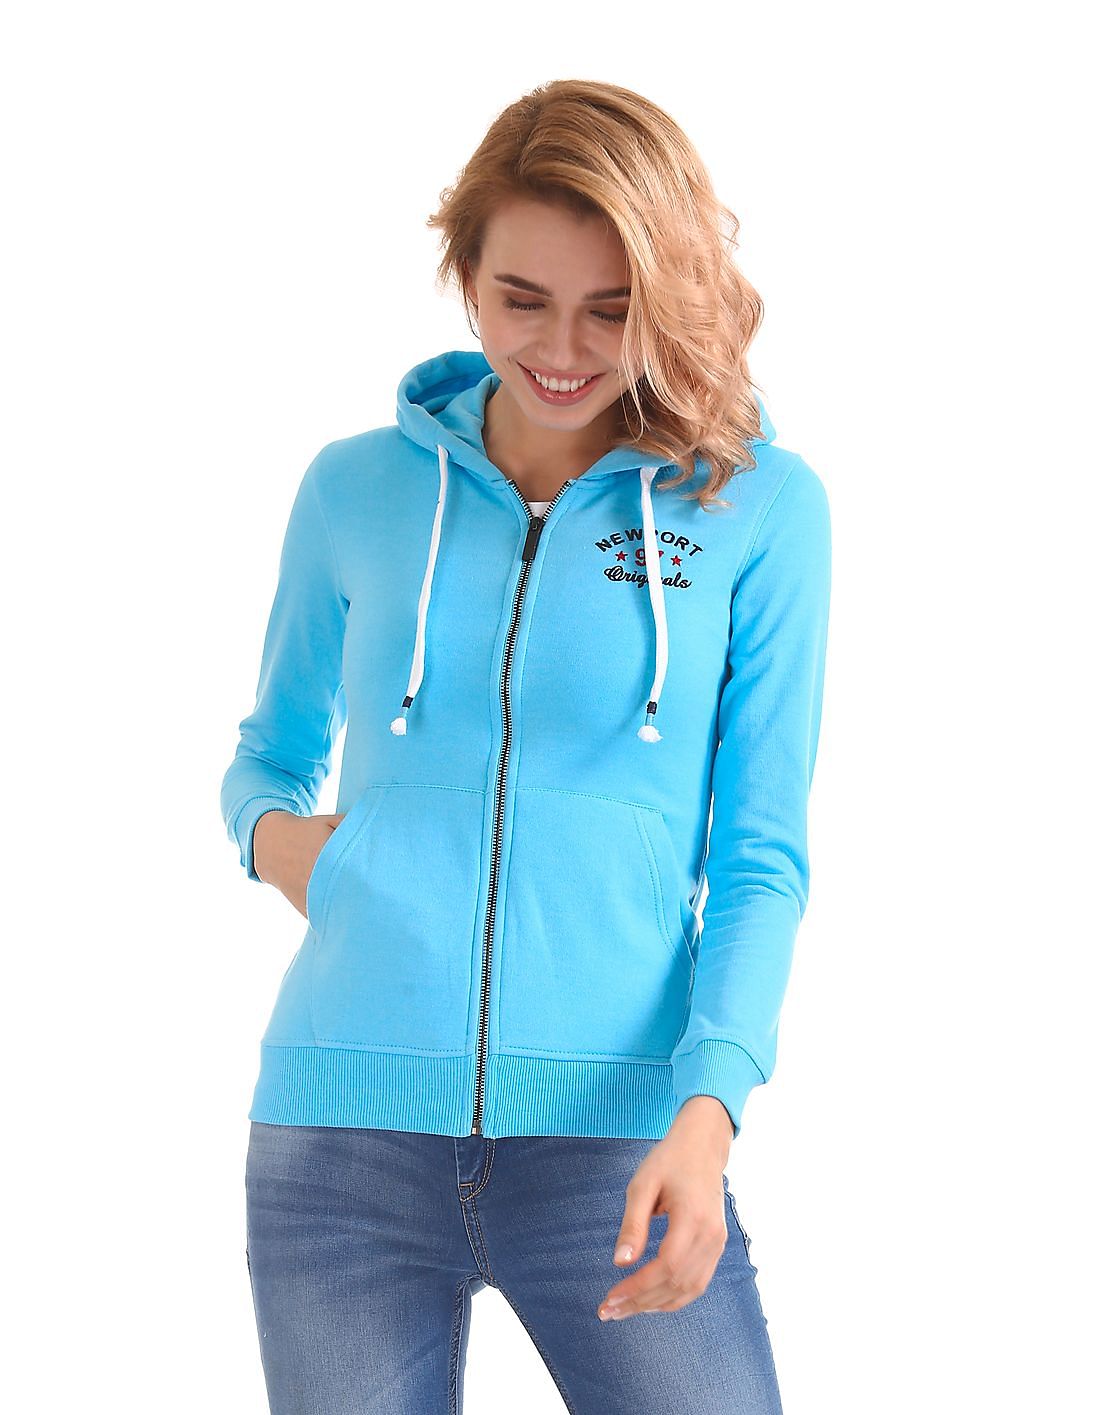 Buy Women Hooded Zip Up Sweatshirt online at NNNOW.com